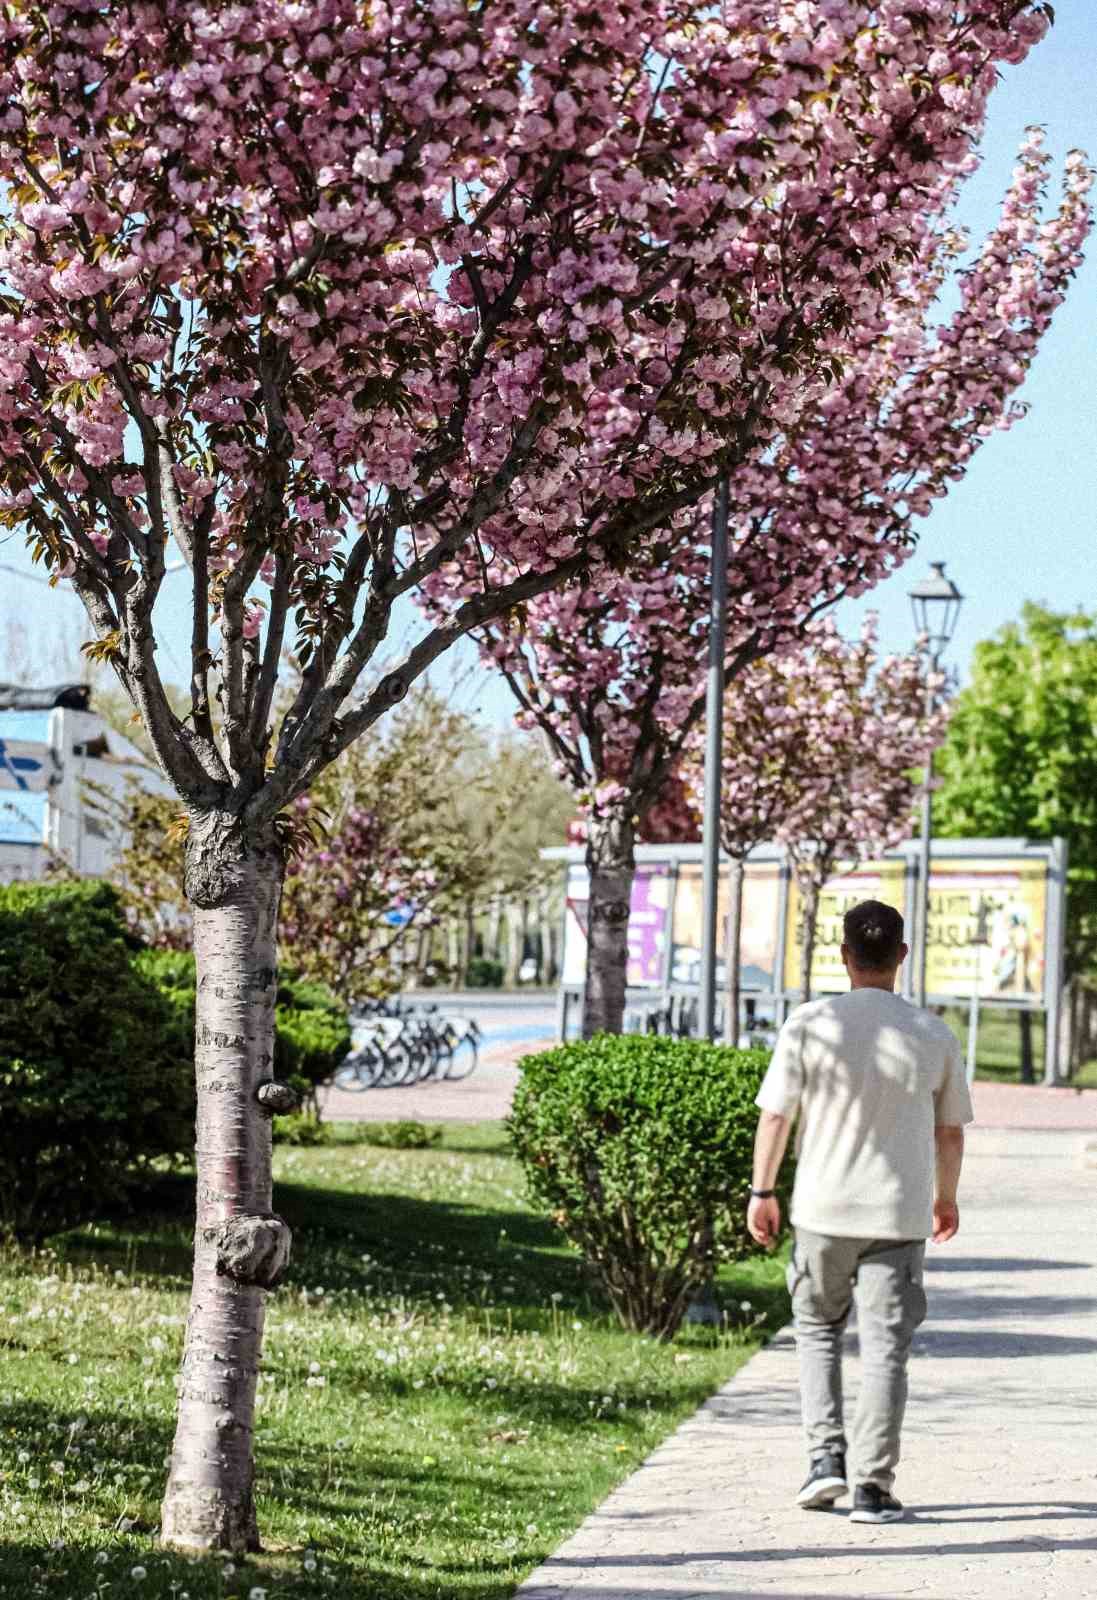 Sakuralar Konya’da çiçek açtı, görüntüler hayran bıraktı
